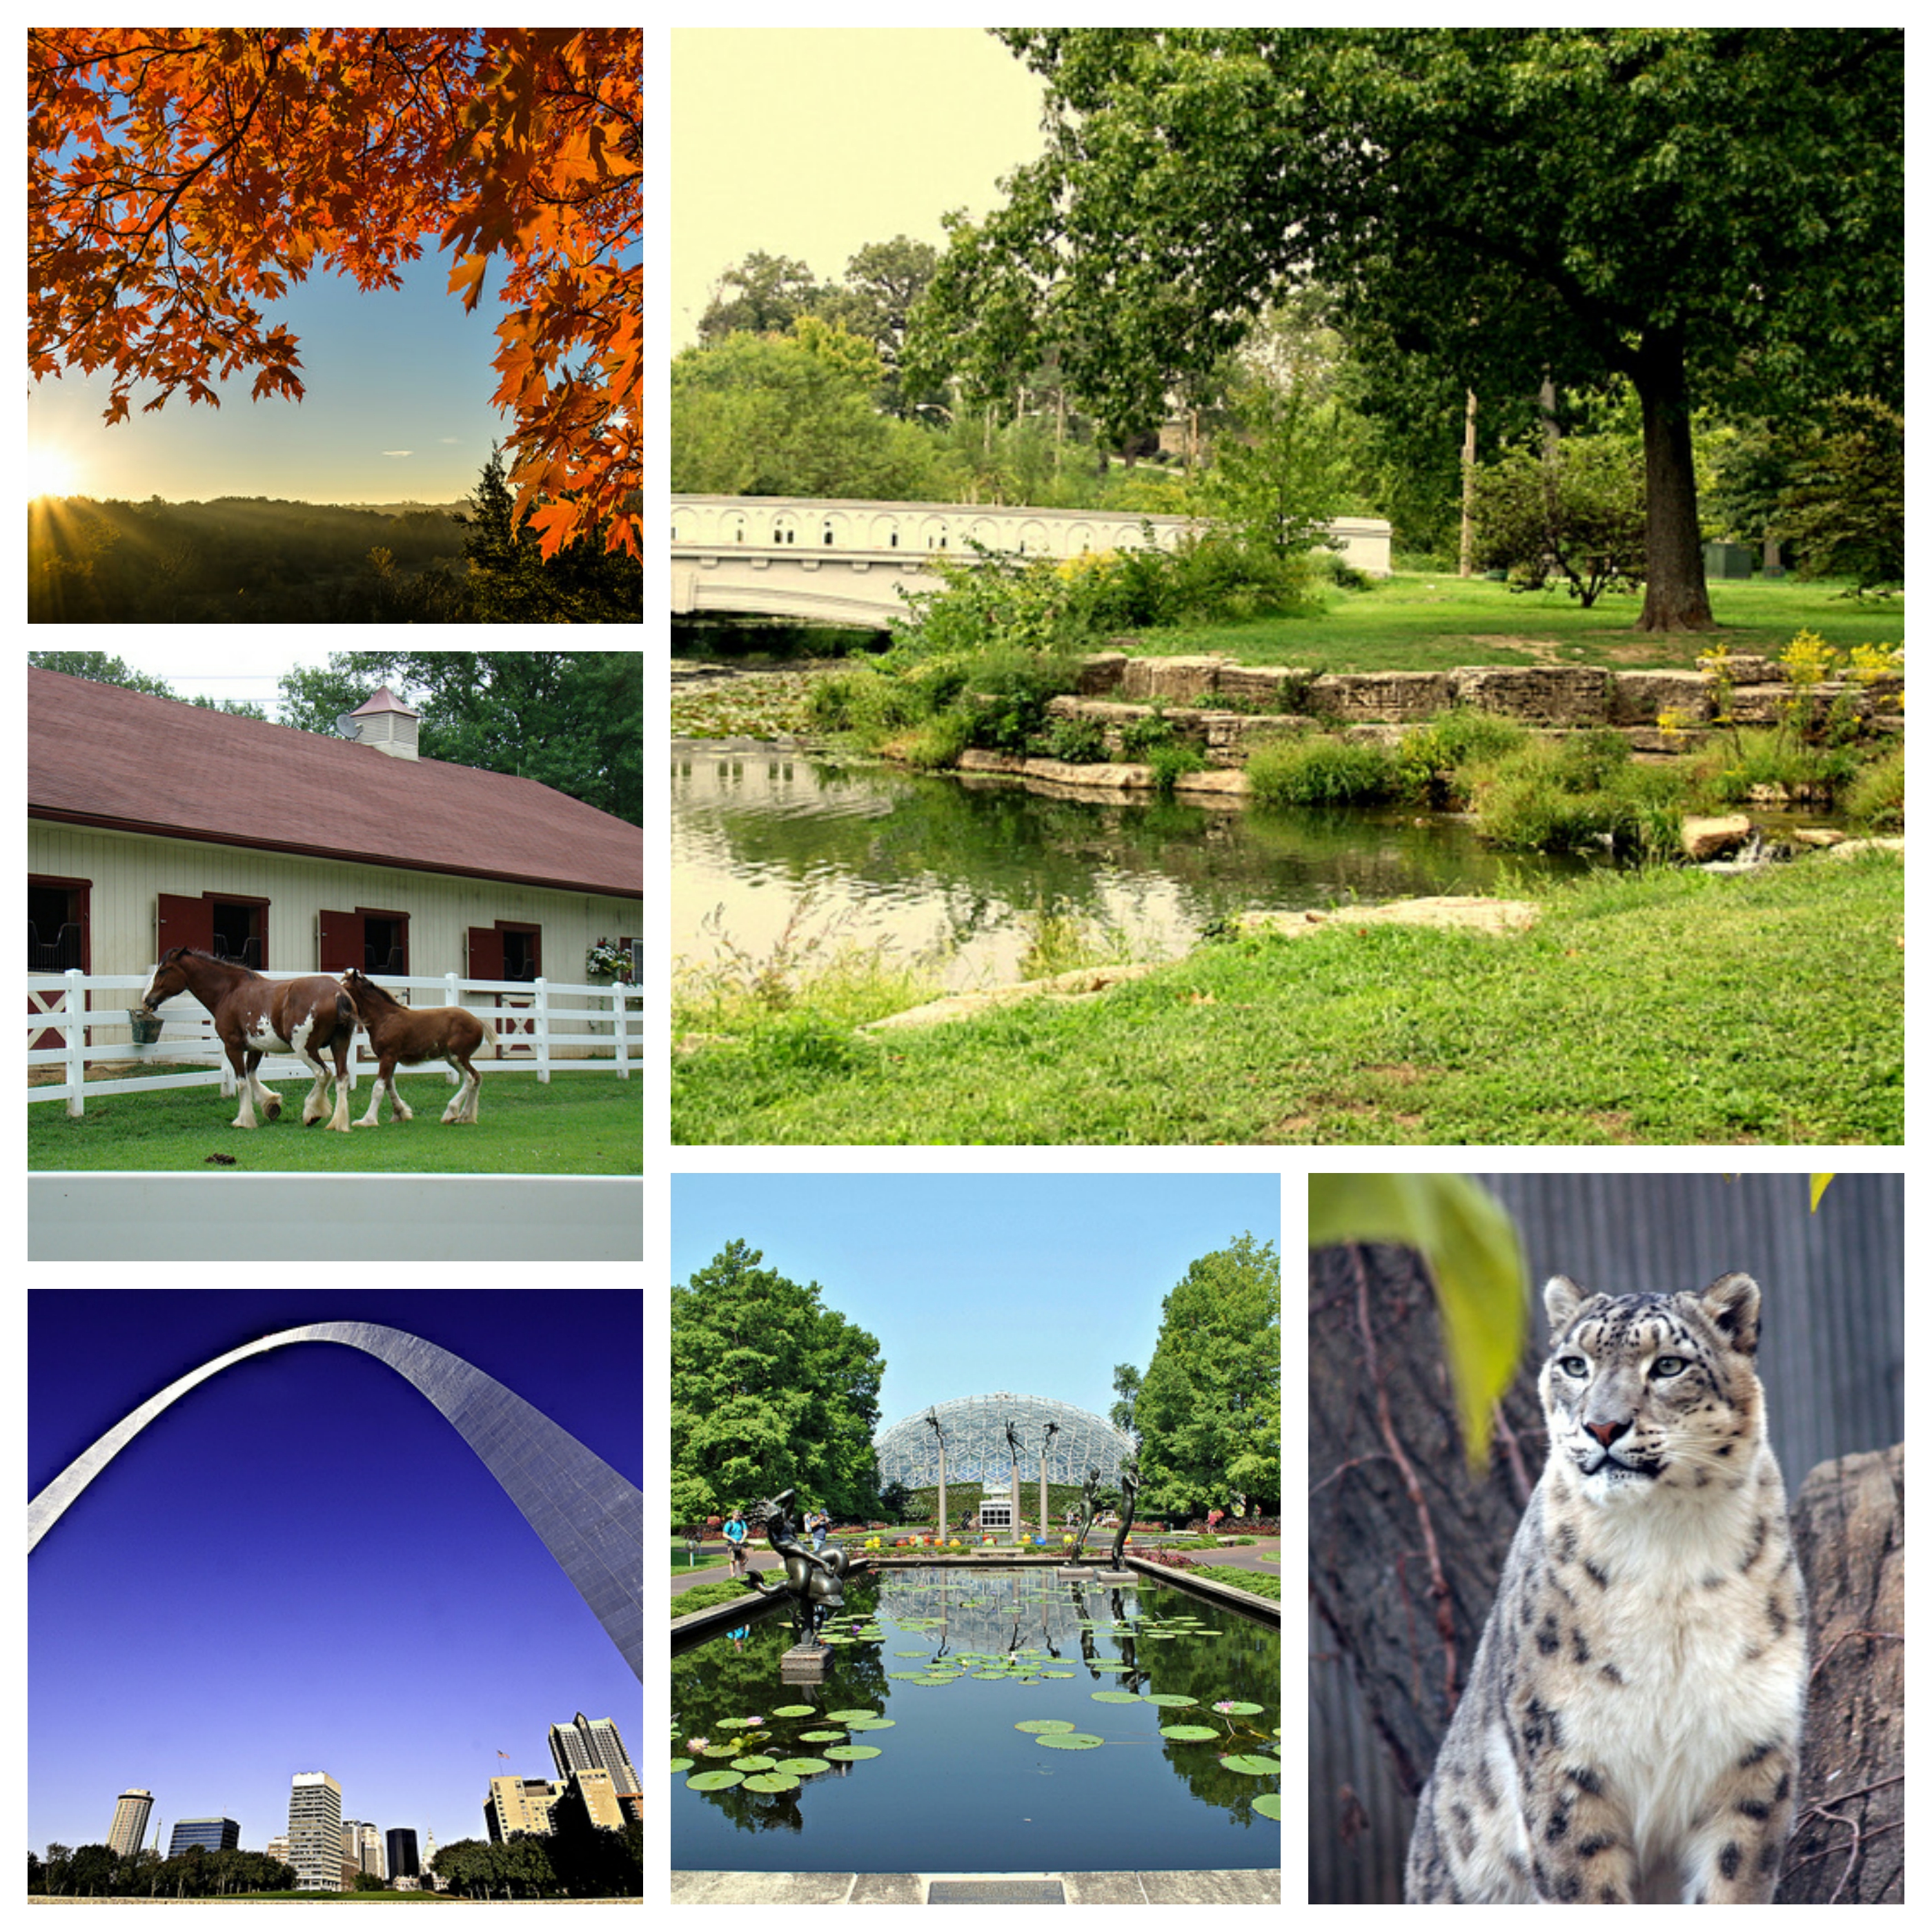 6 Best Outdoor Activities in St. Louis